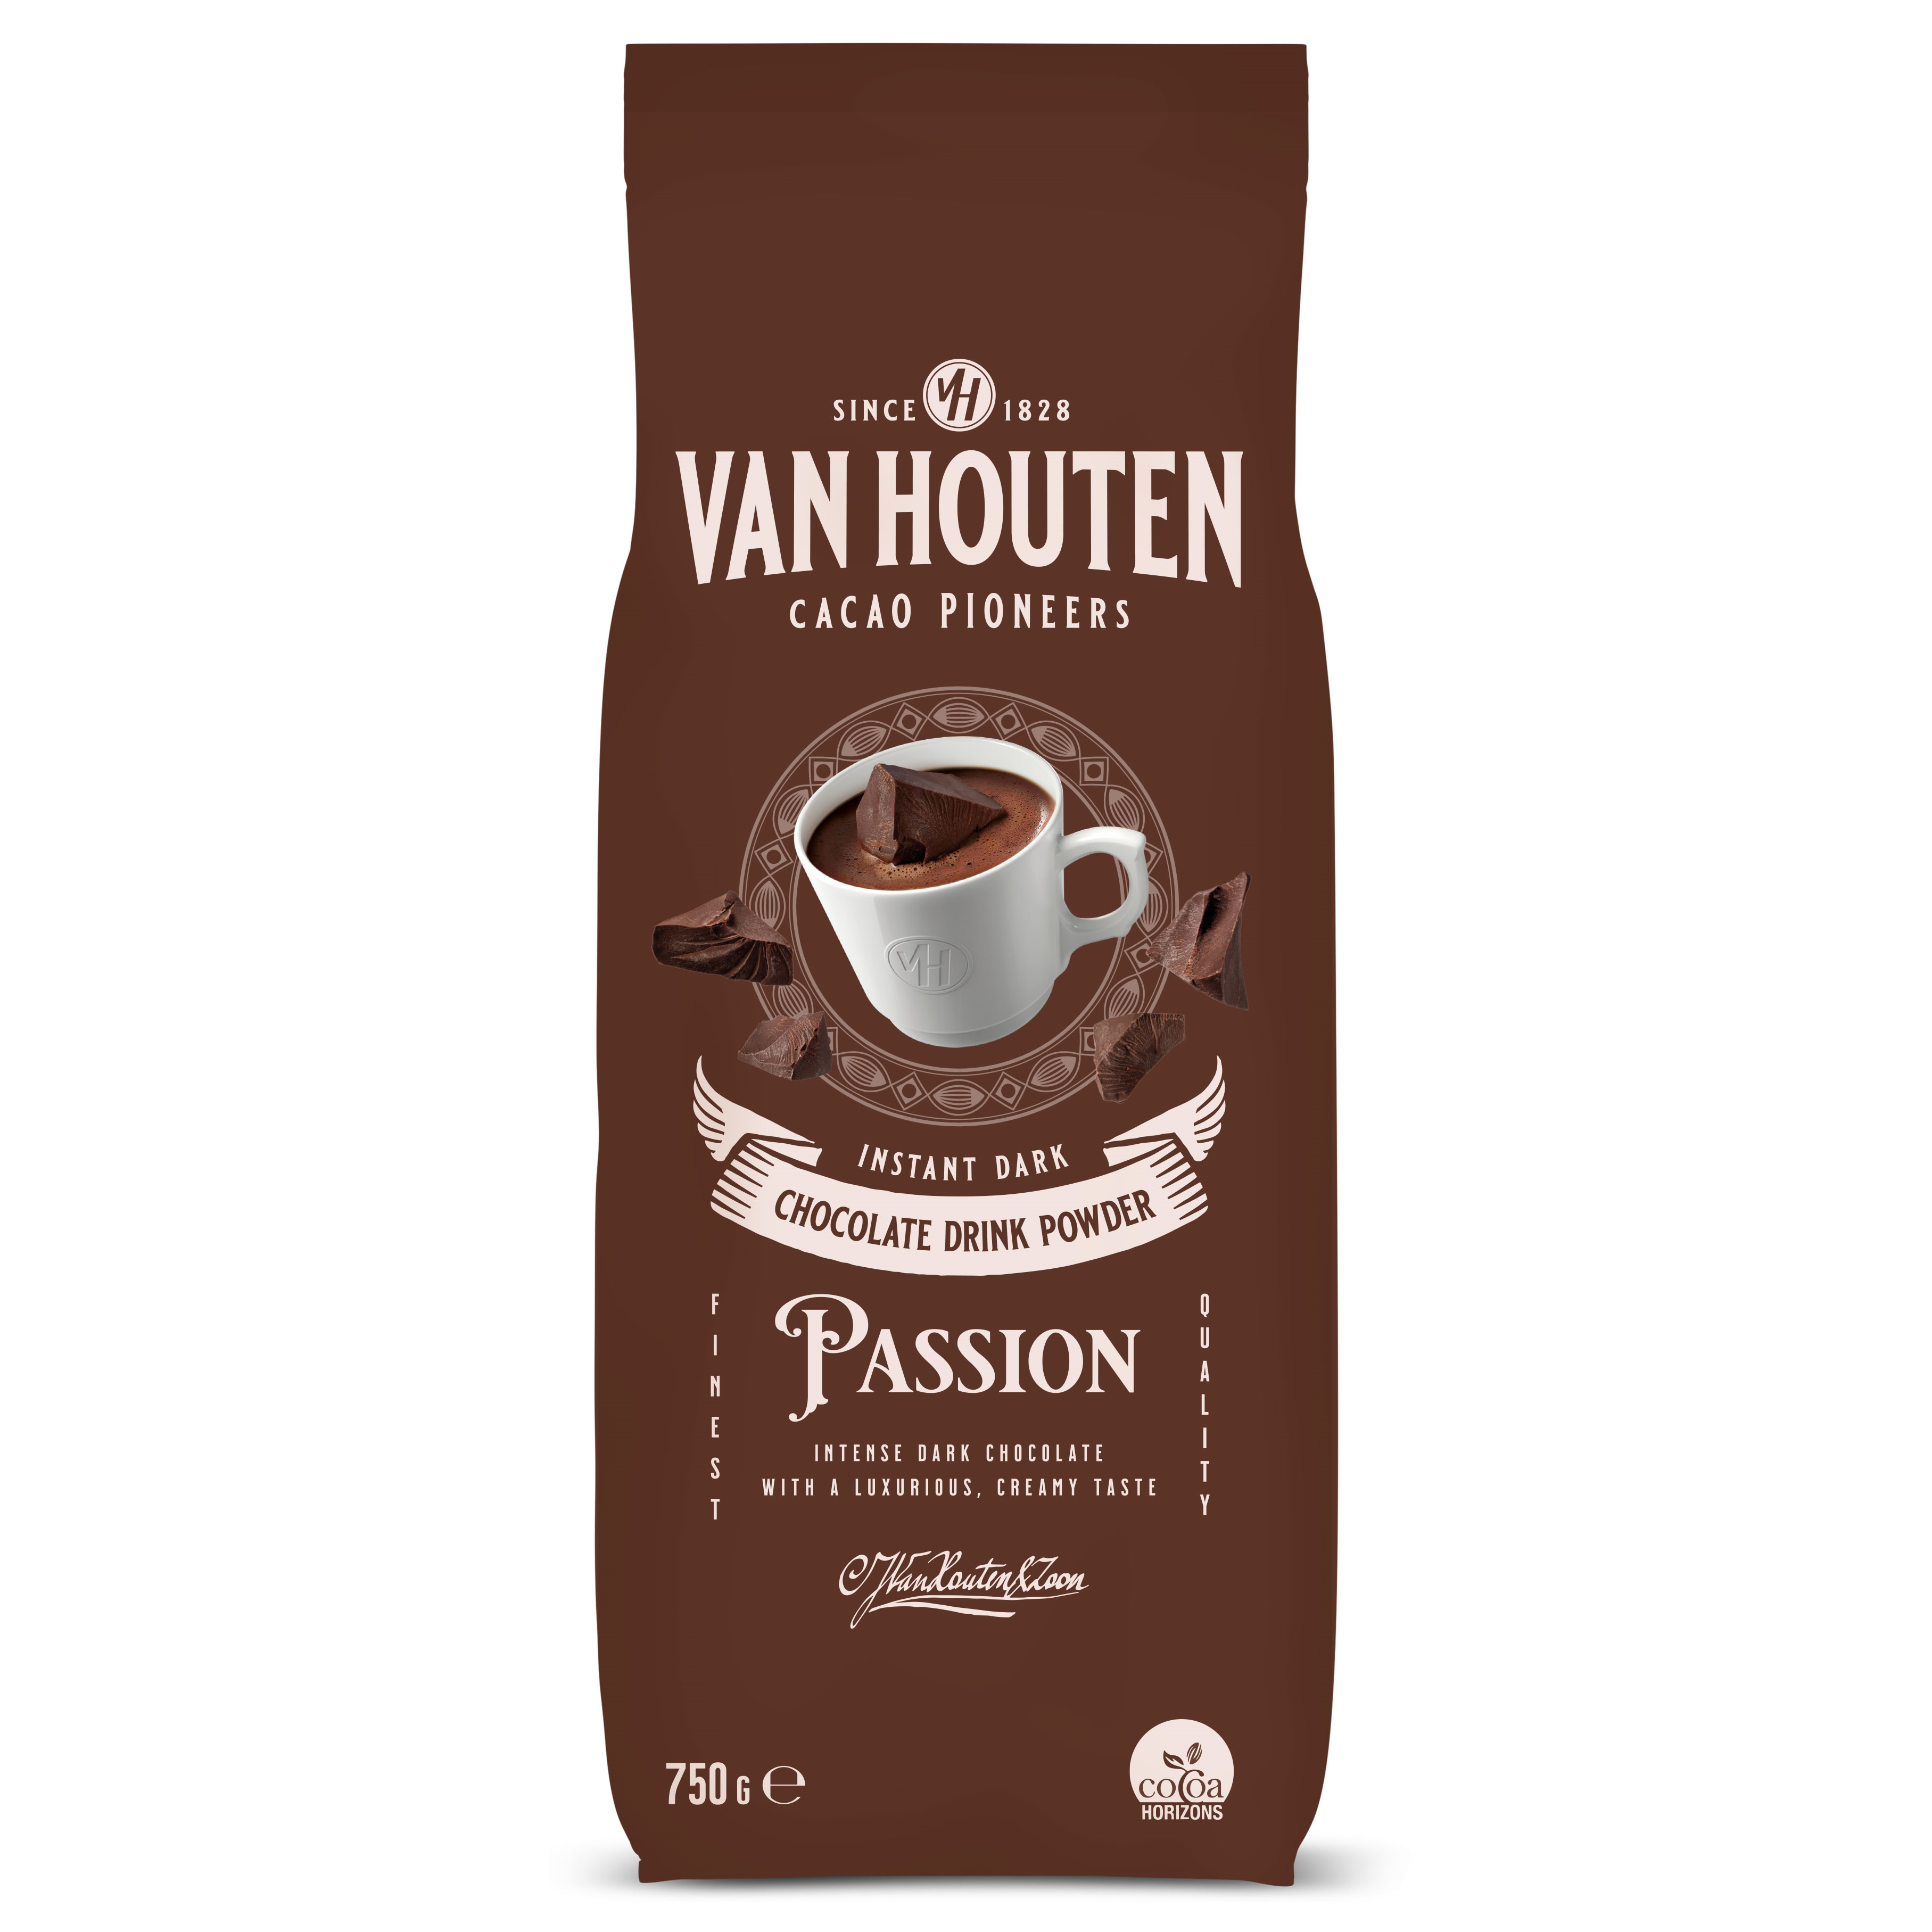 Van Houten Passion Hot Chocolate Powder